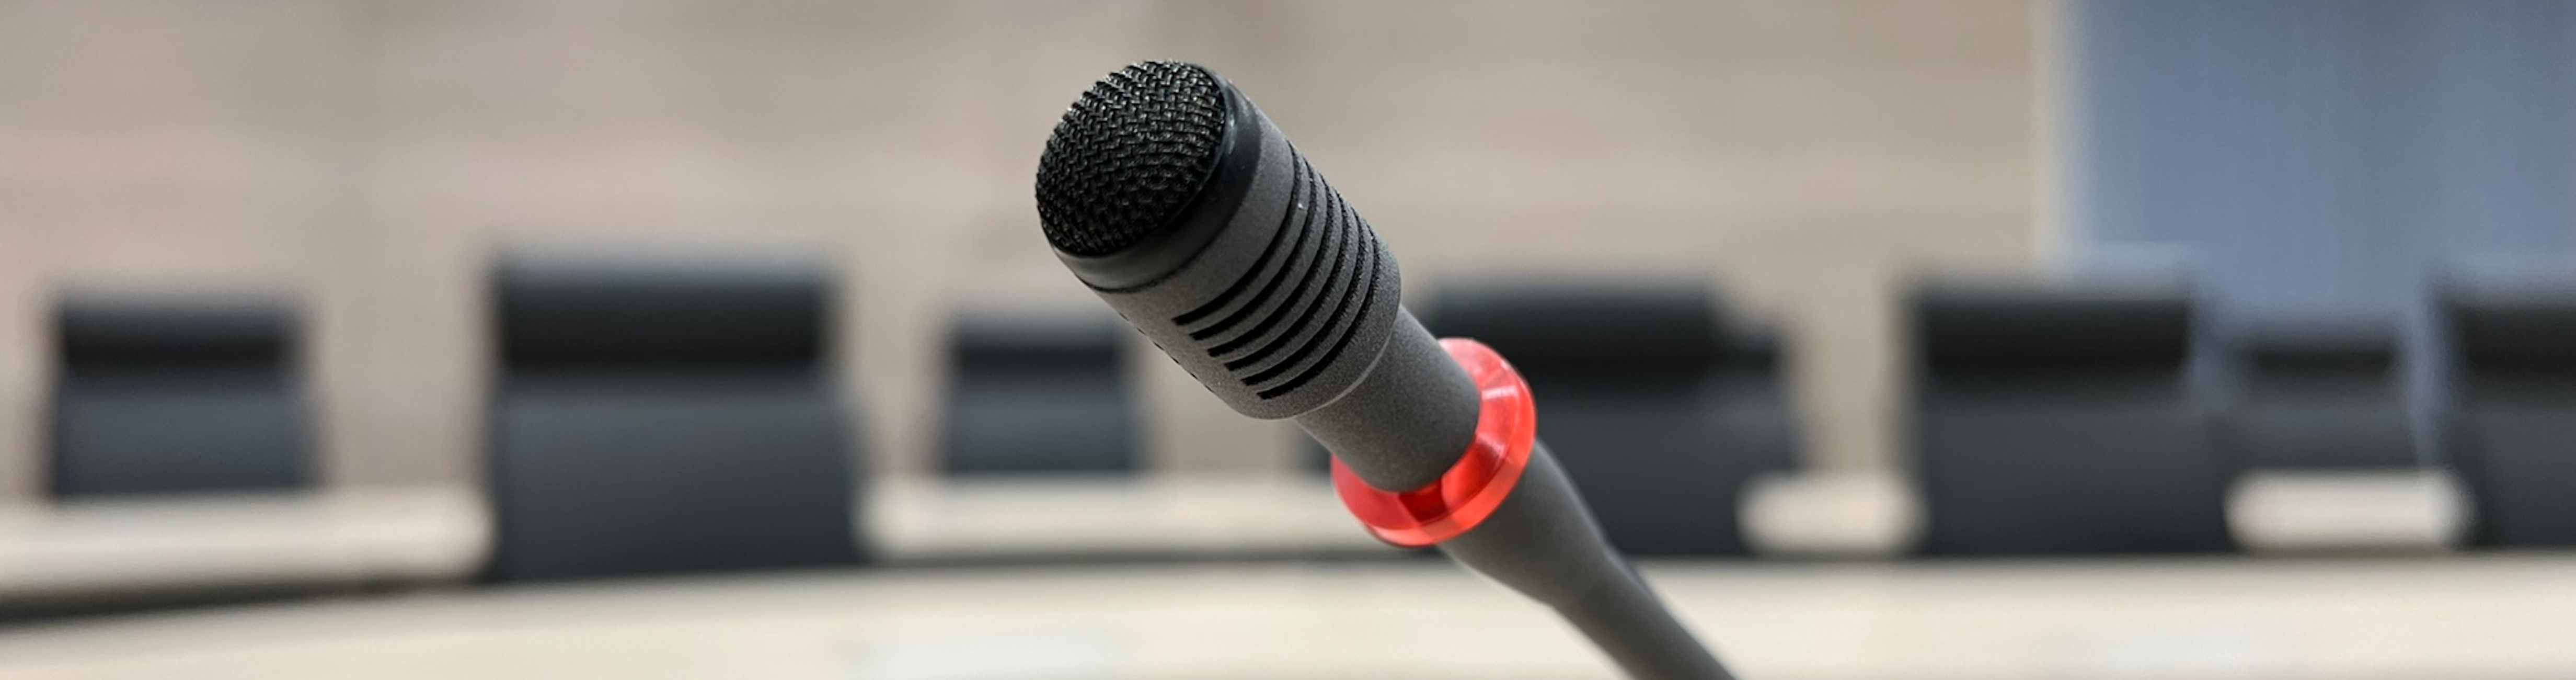 Symbolbild: Mikrofon einer Diskussionsanlage im Ratssaal